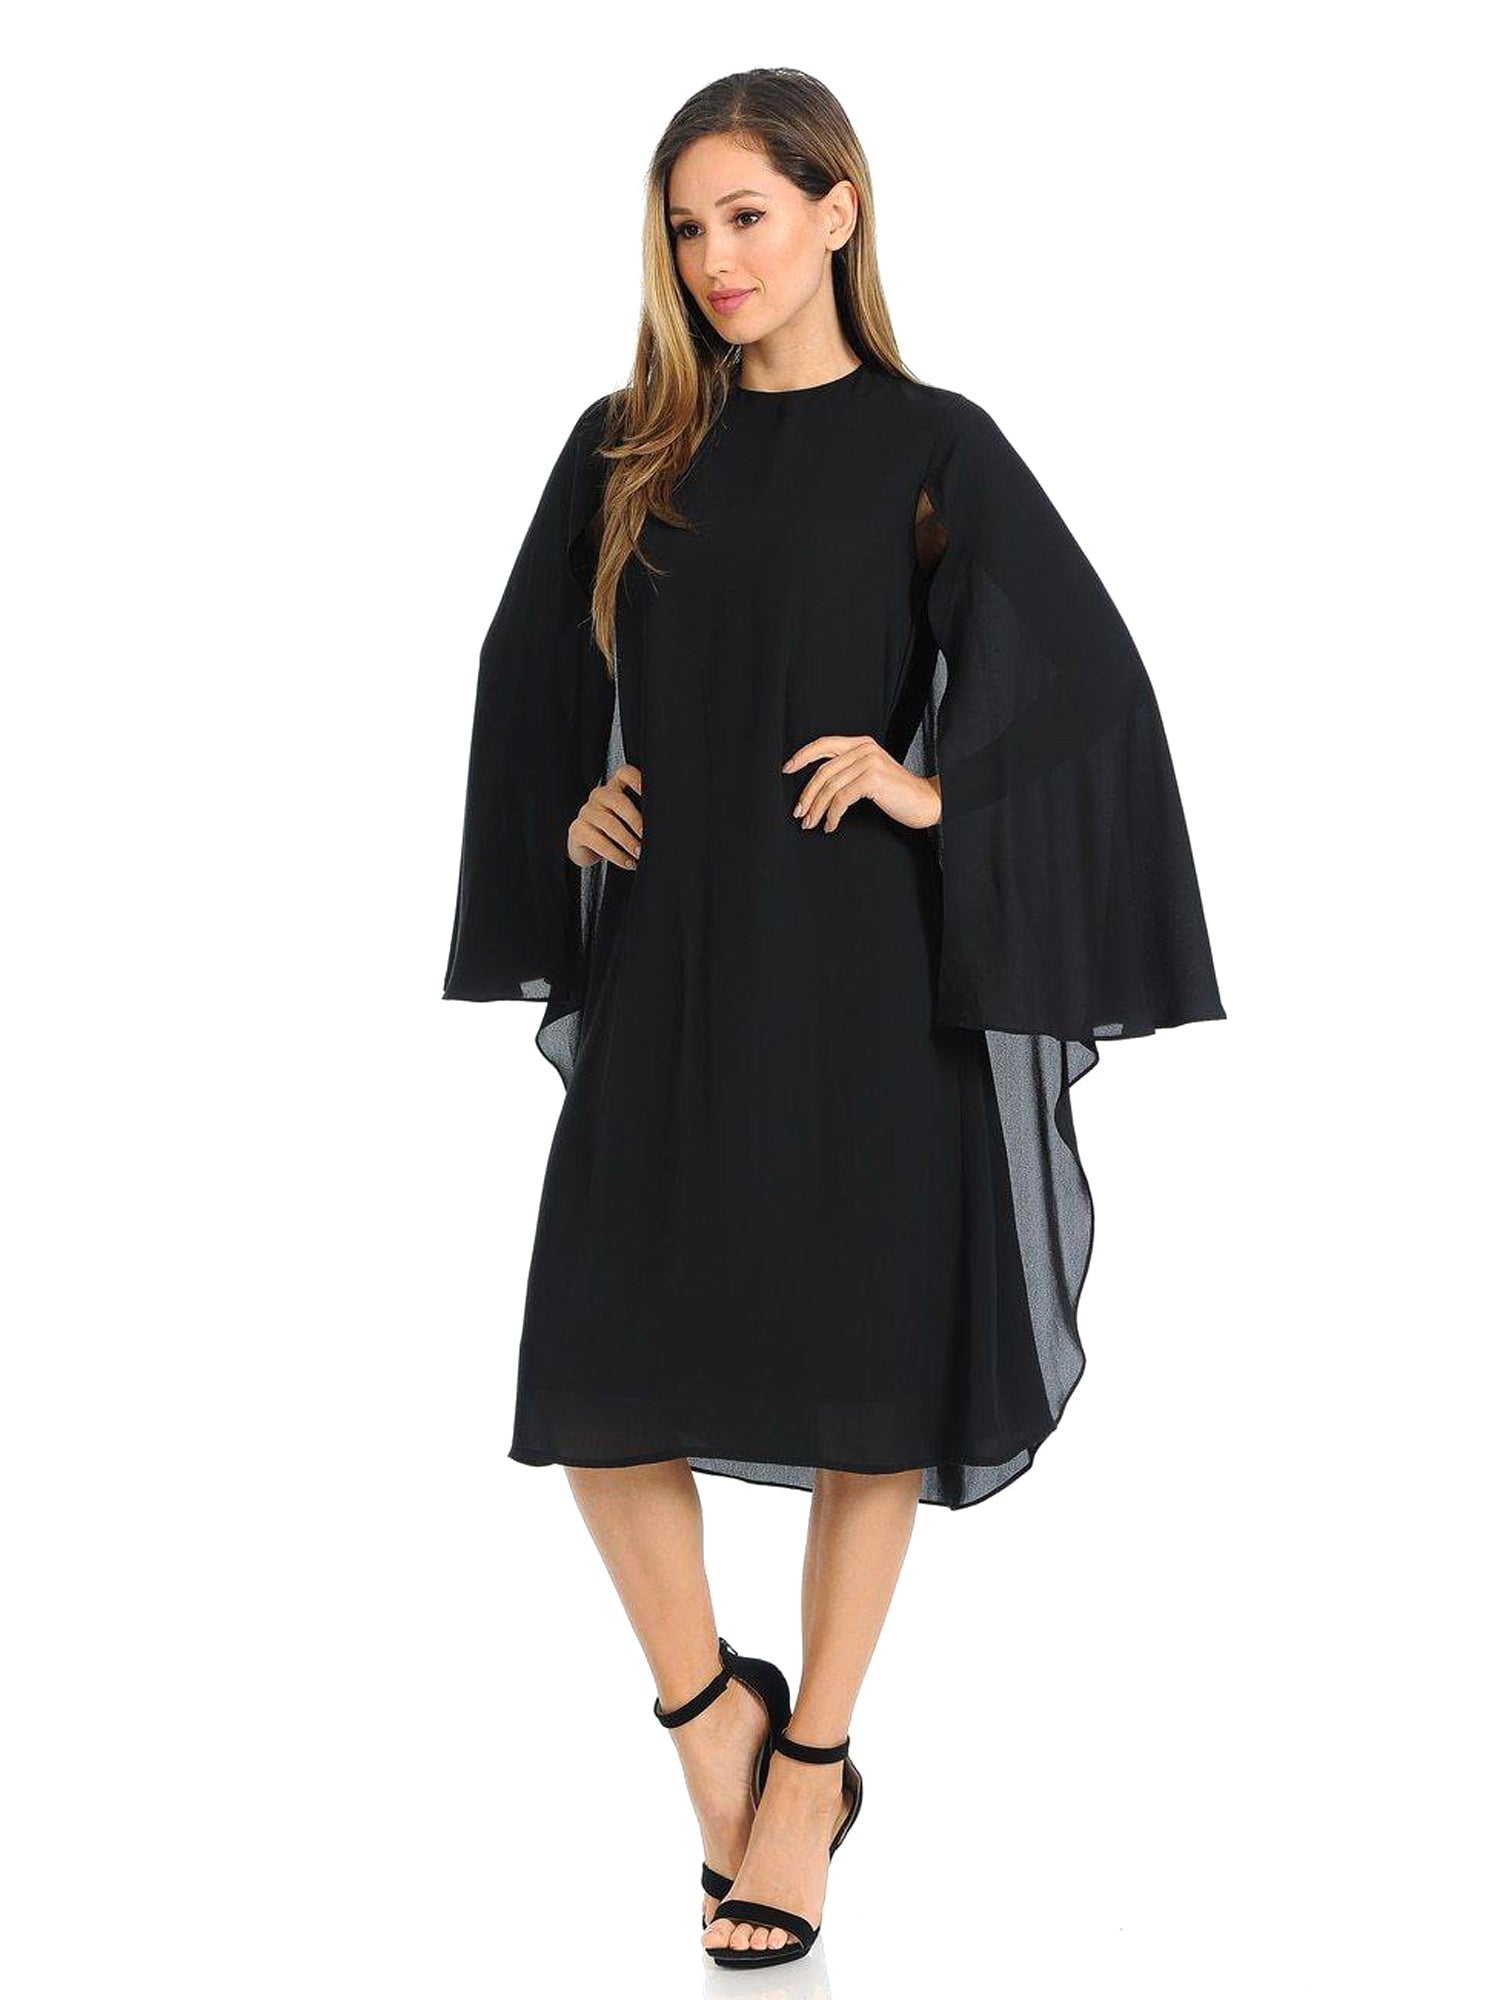 Edera Caped Black Chiffon Dress vendor-unknown